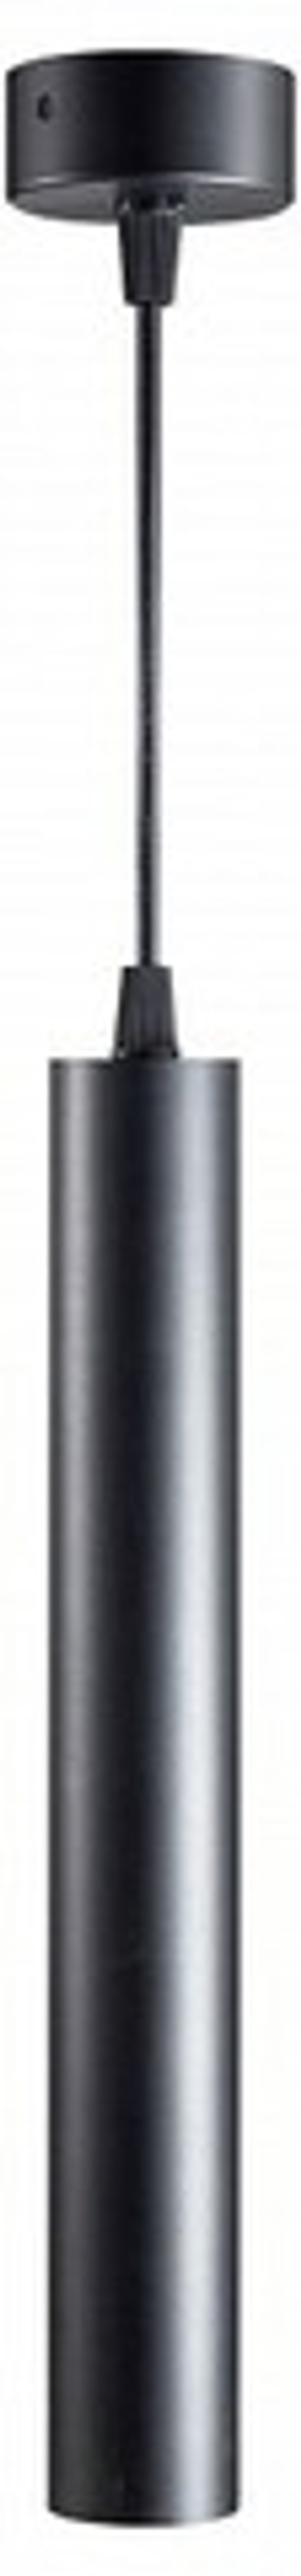 Подвесной светильник Fiberli Tube630 12110101